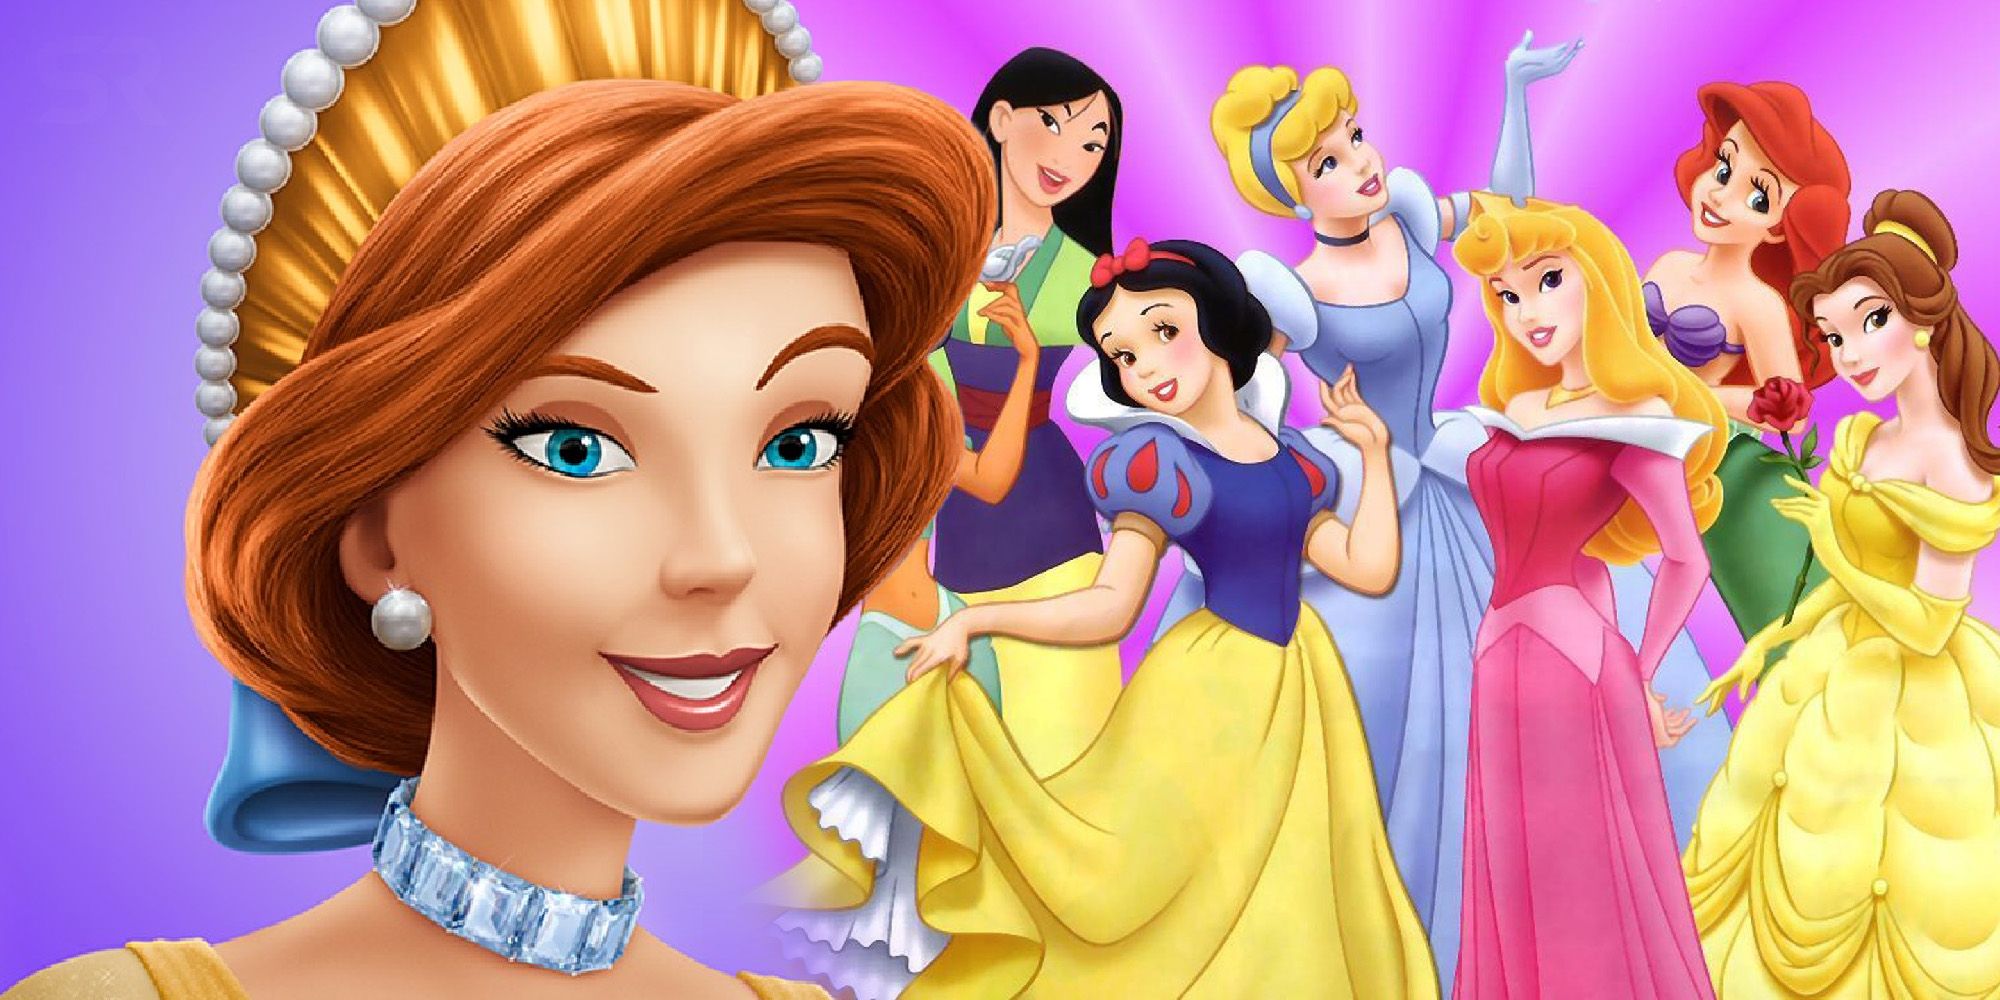 Disney Princesses - Disney Princess Photo (36761894) - Fanpop